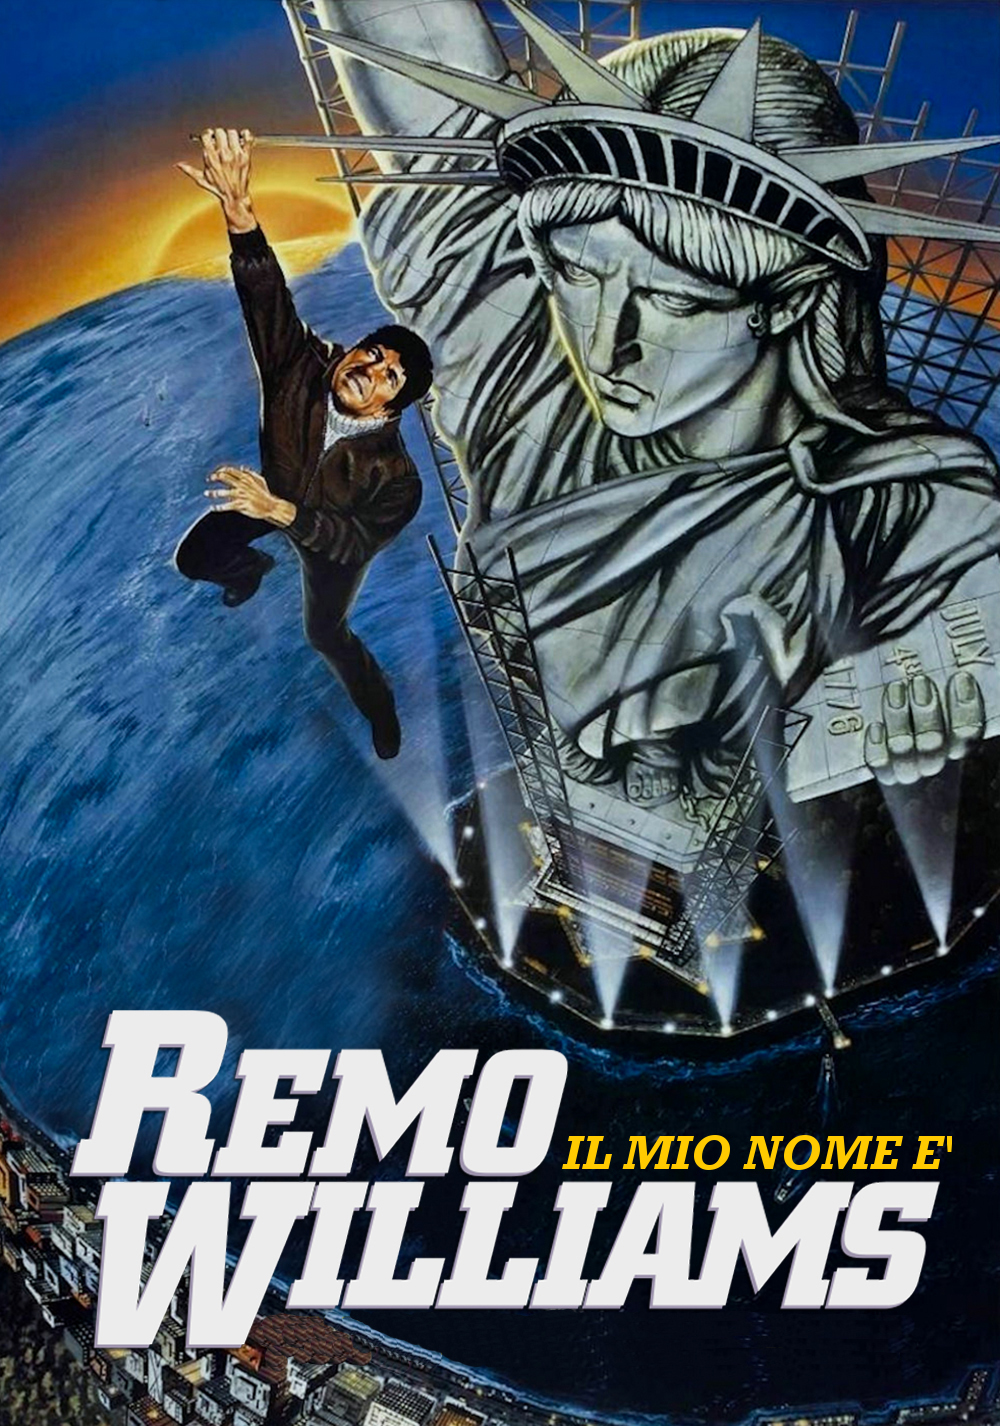 Il mio nome è Remo Williams [HD] (1985)